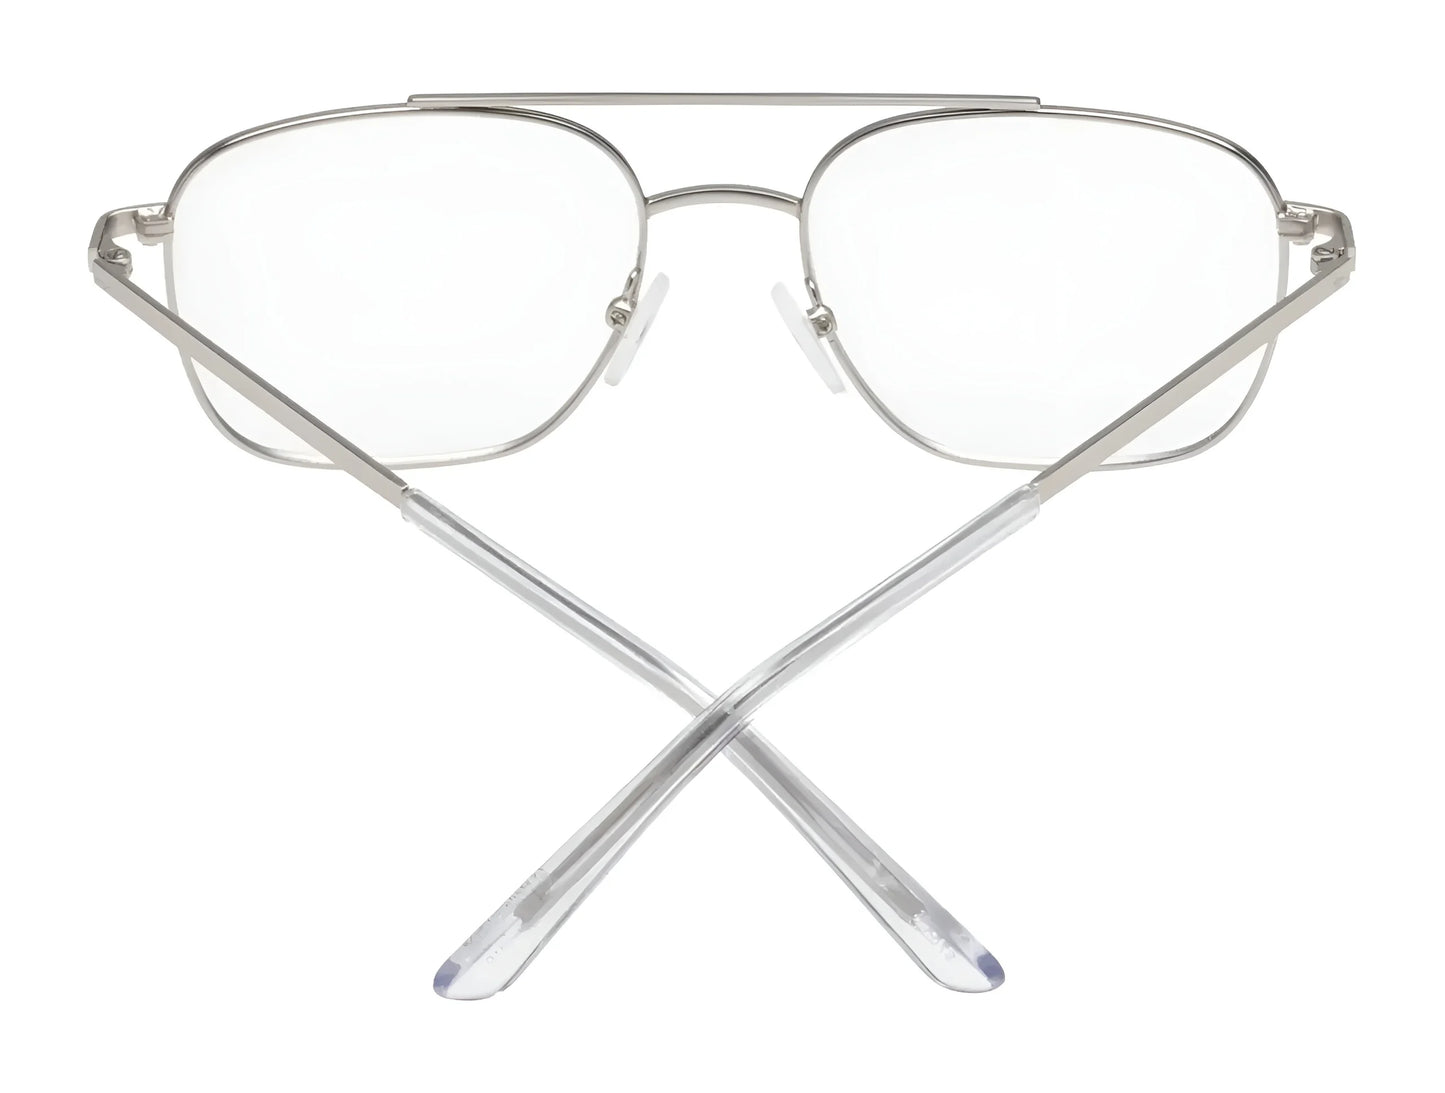 SPY TAMLAND Eyeglasses